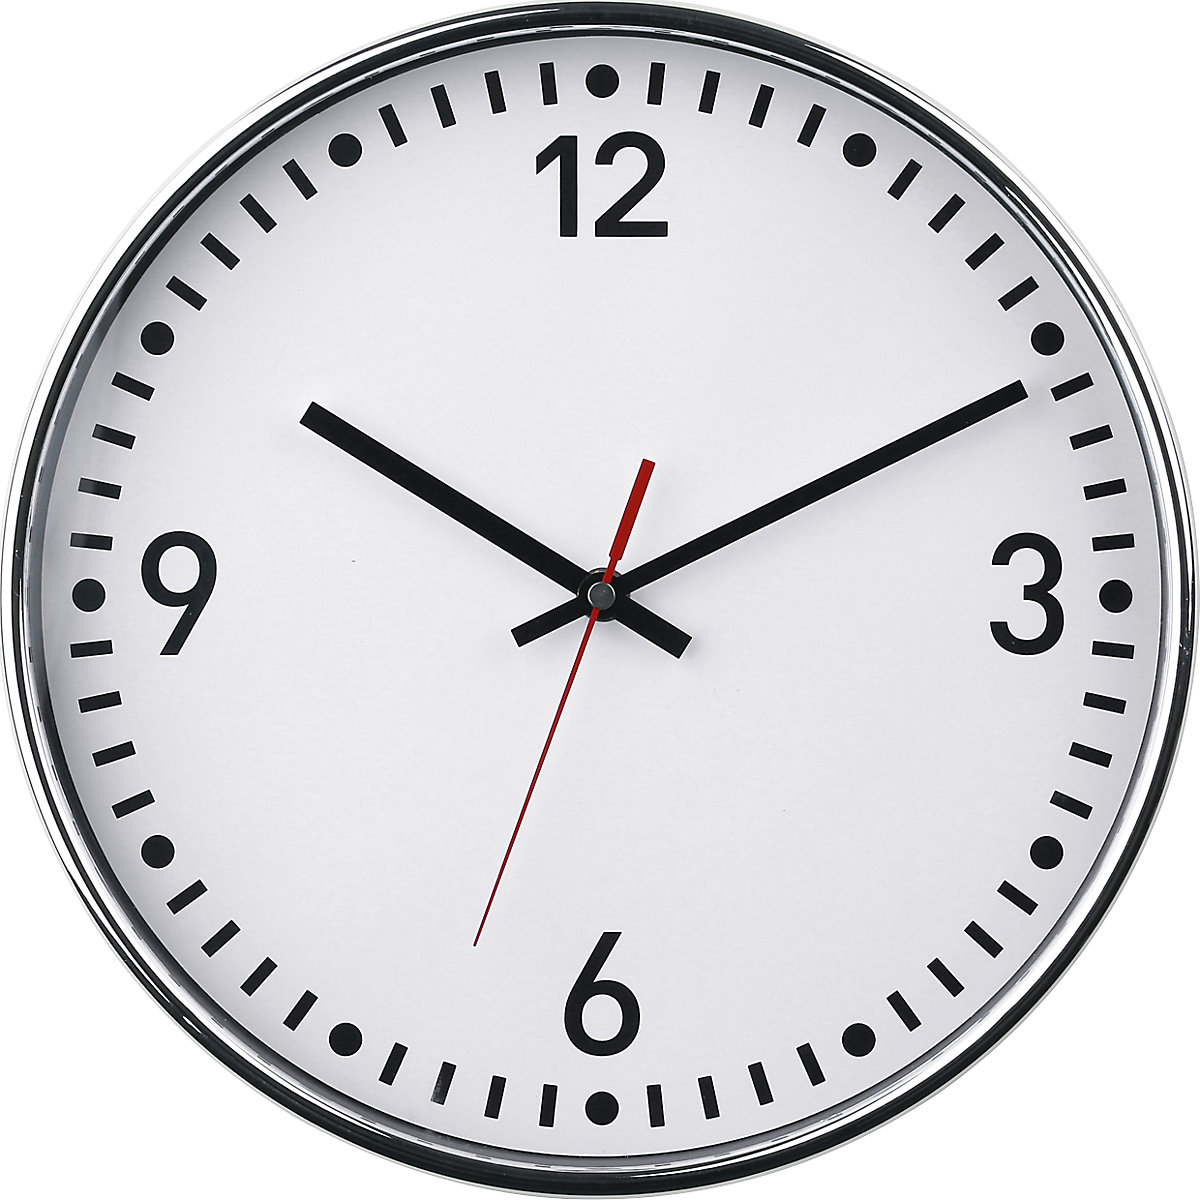 Nástěnné hodiny, Ø 300 mm, hodiny s mechanismem Quartz, bílý číselník, s číslicemi a proužky